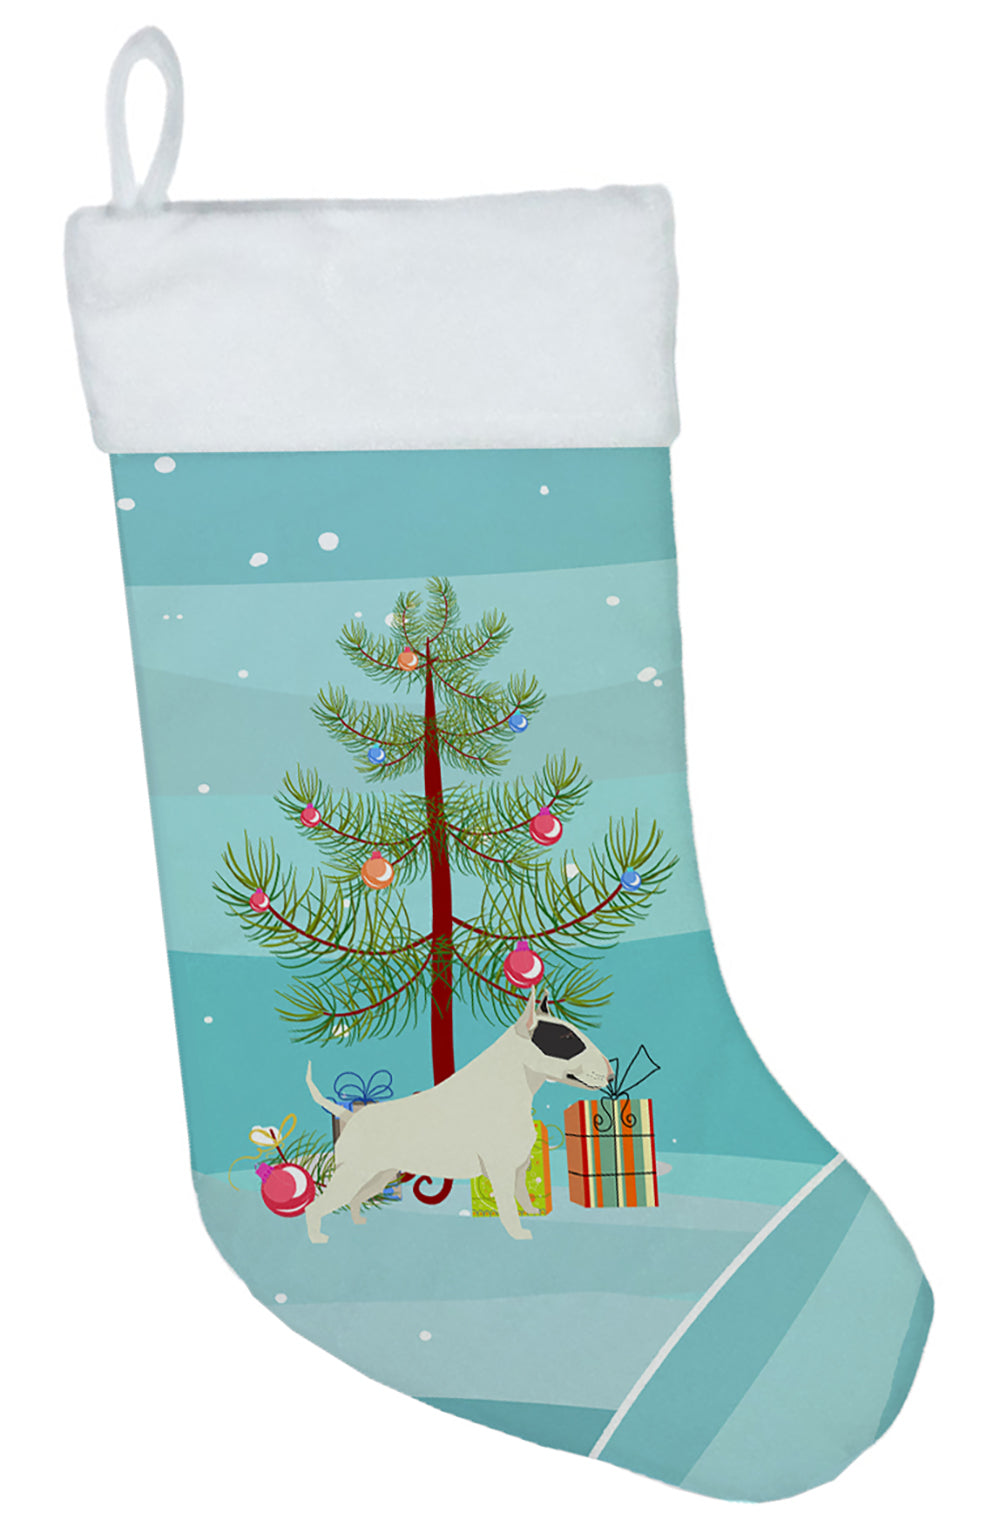 Black and White Bull Terrier Christmas Tree Christmas Stocking CK3527CS